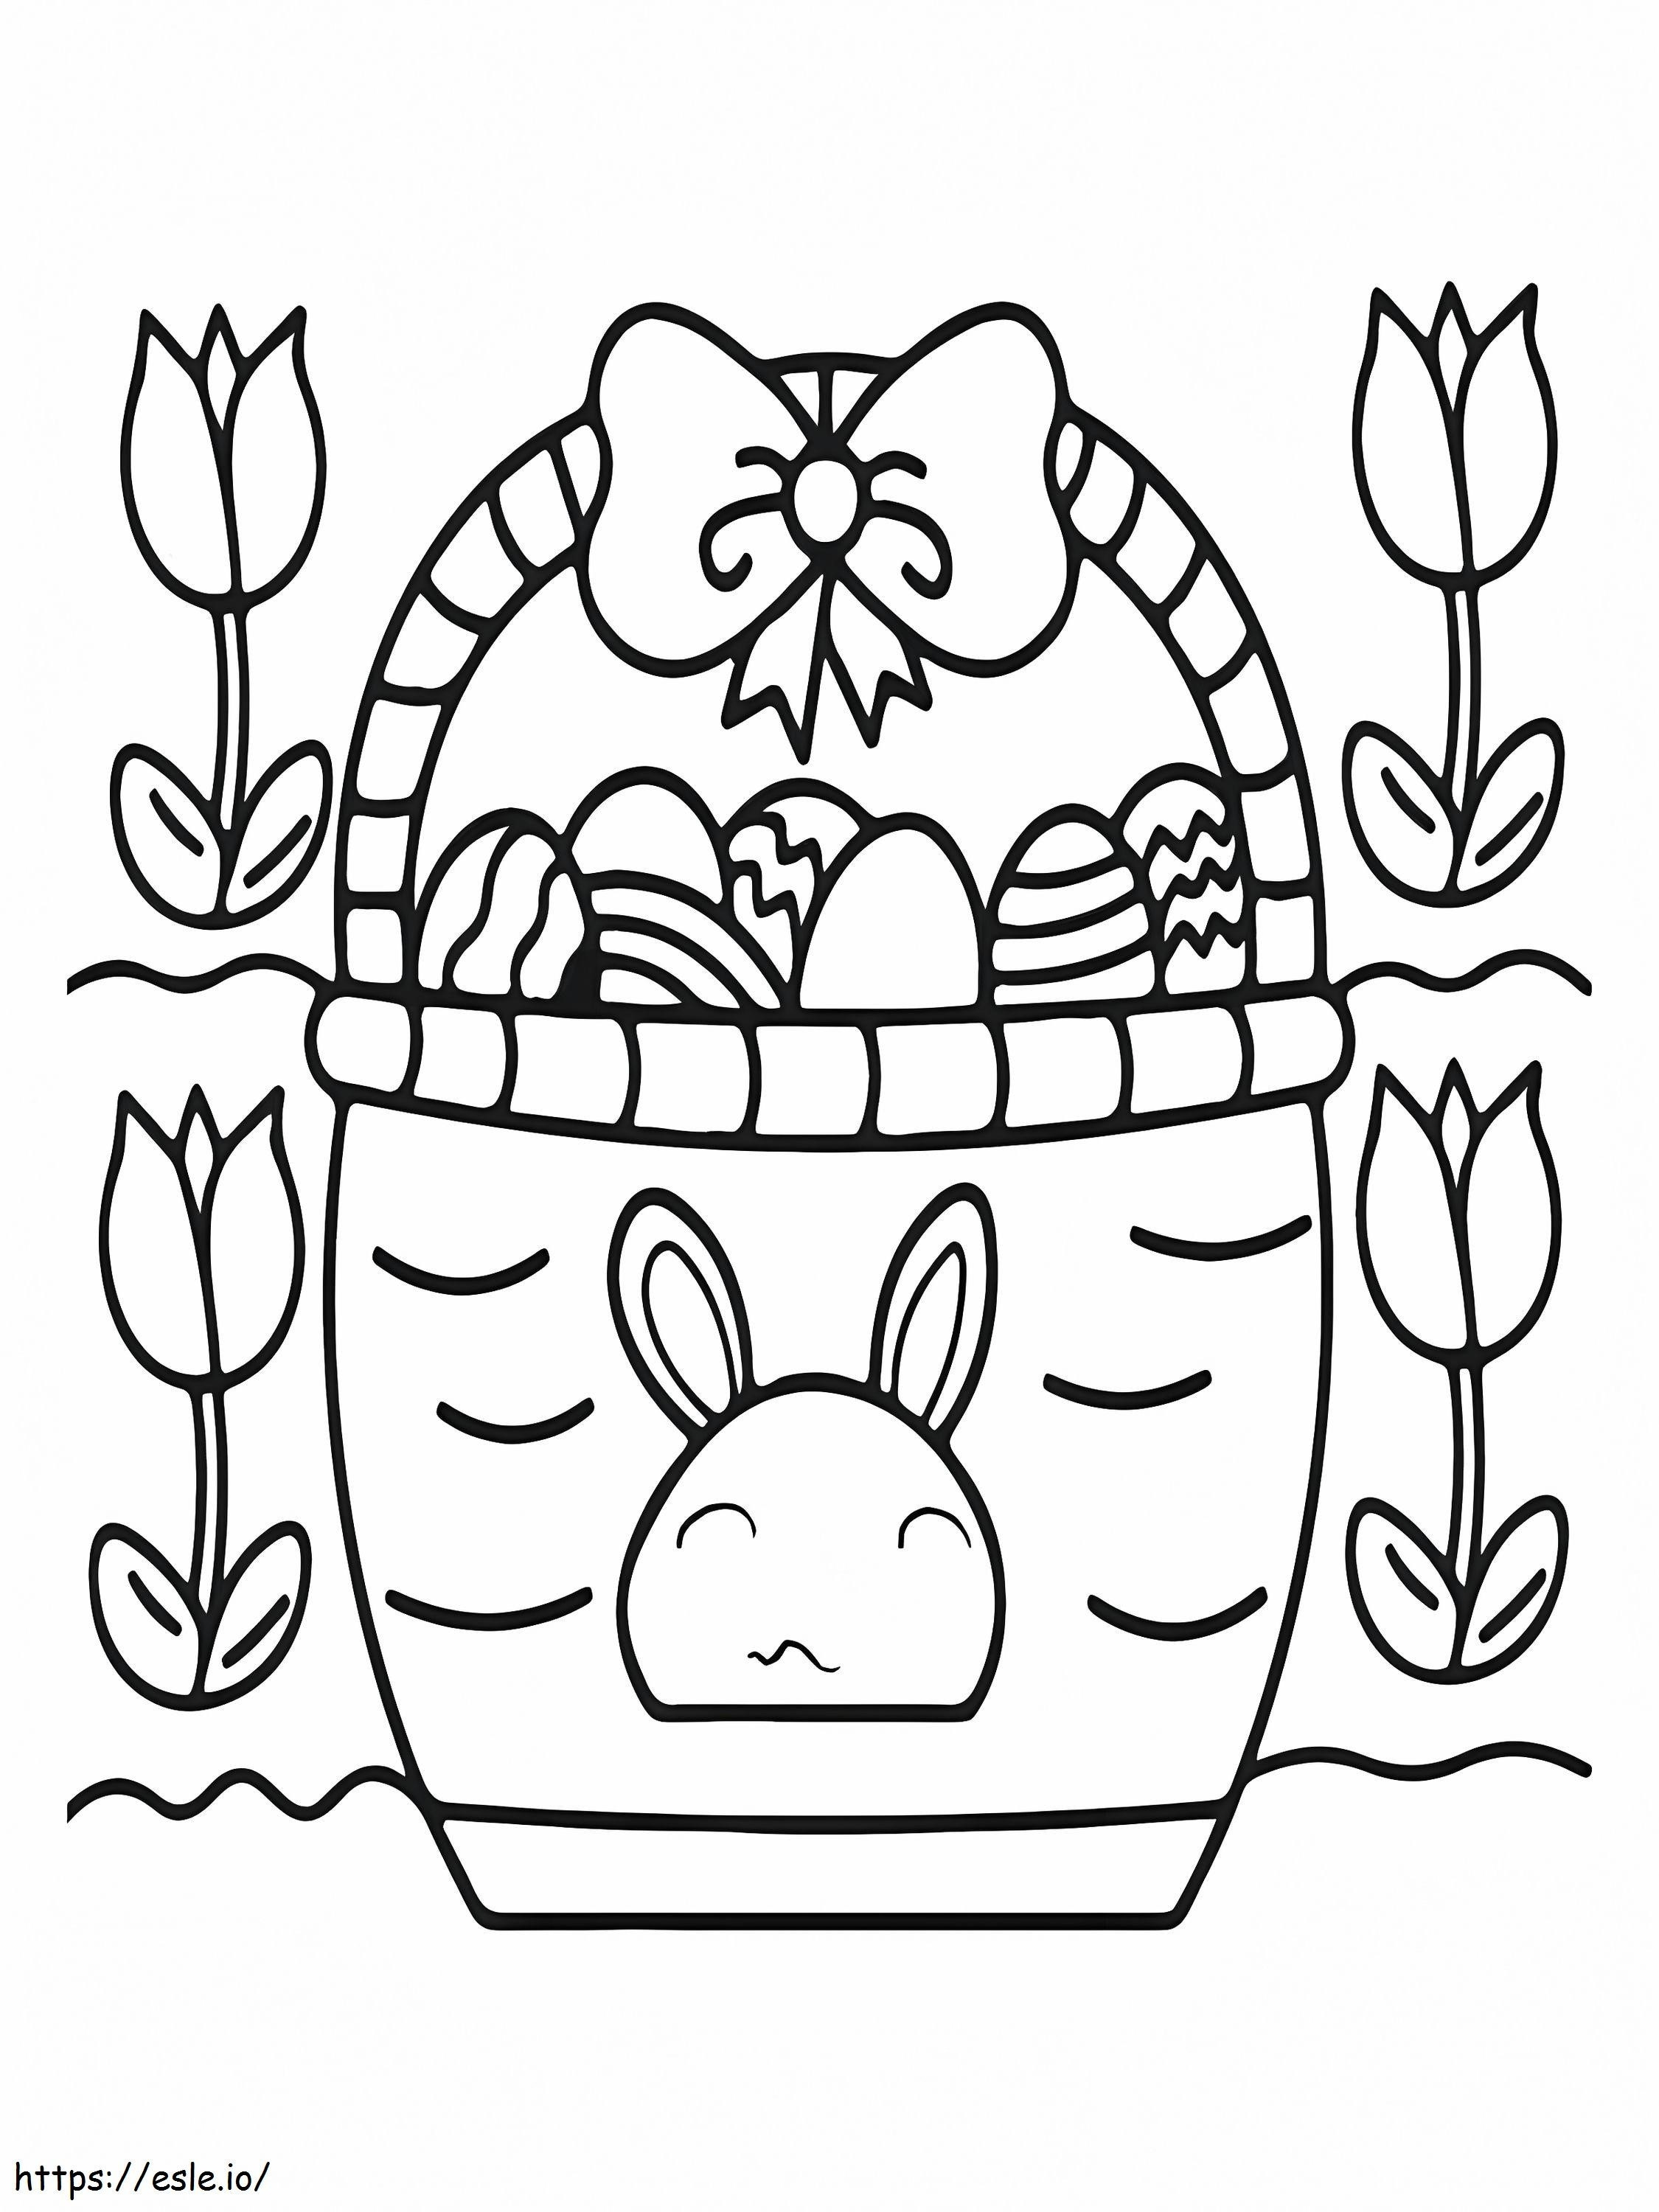 Canasta Llena De Huevos De Pascua para colorear